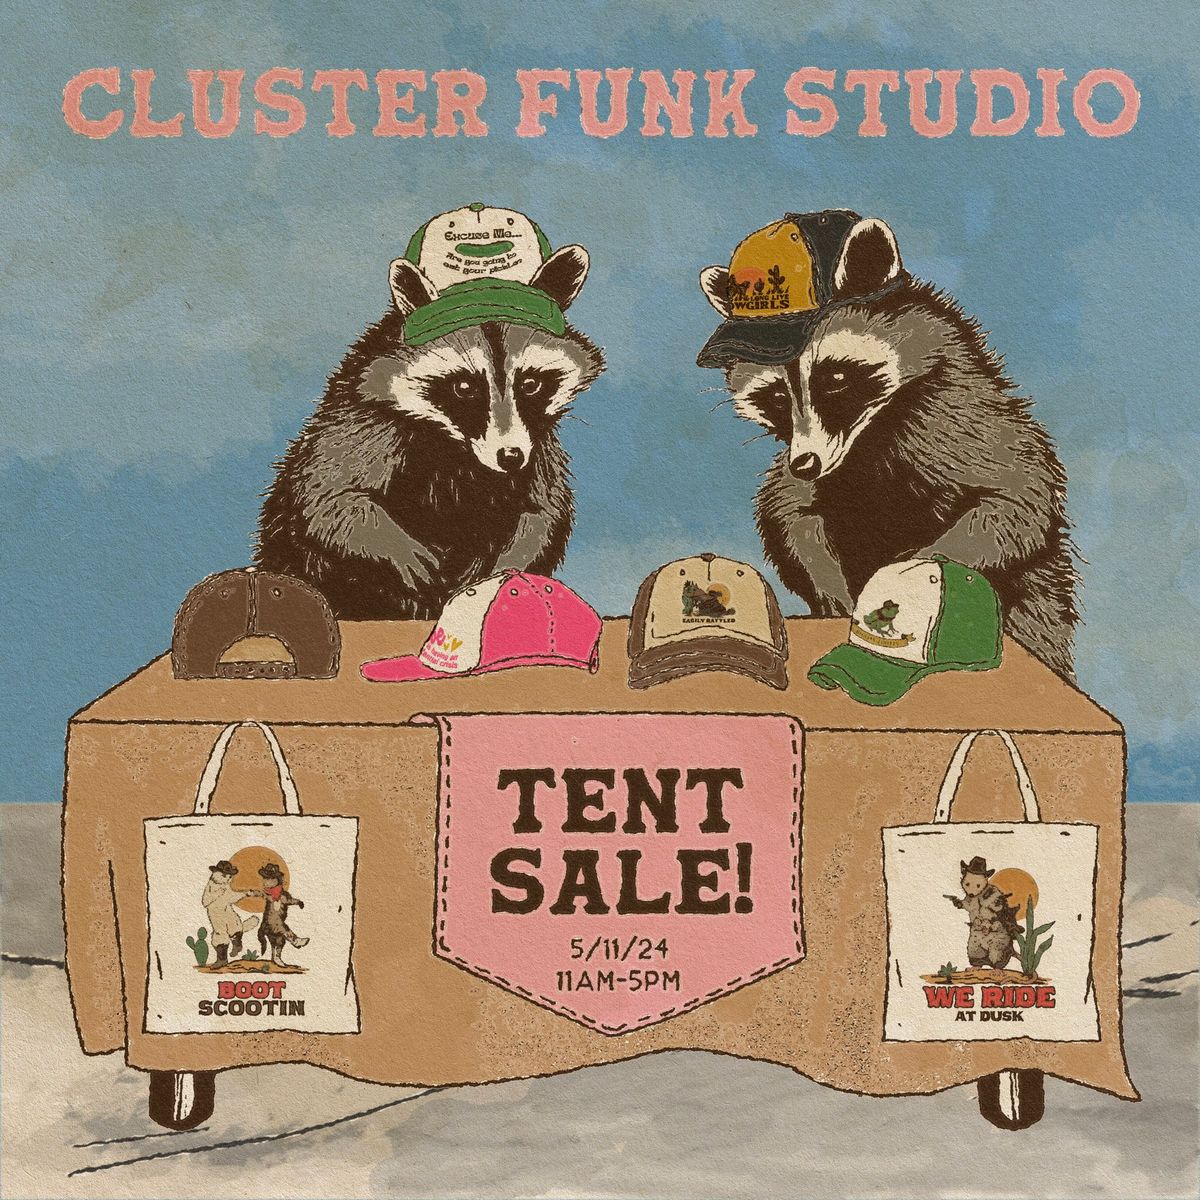 Cluster Funk Studio Tent Sale and Open Studio